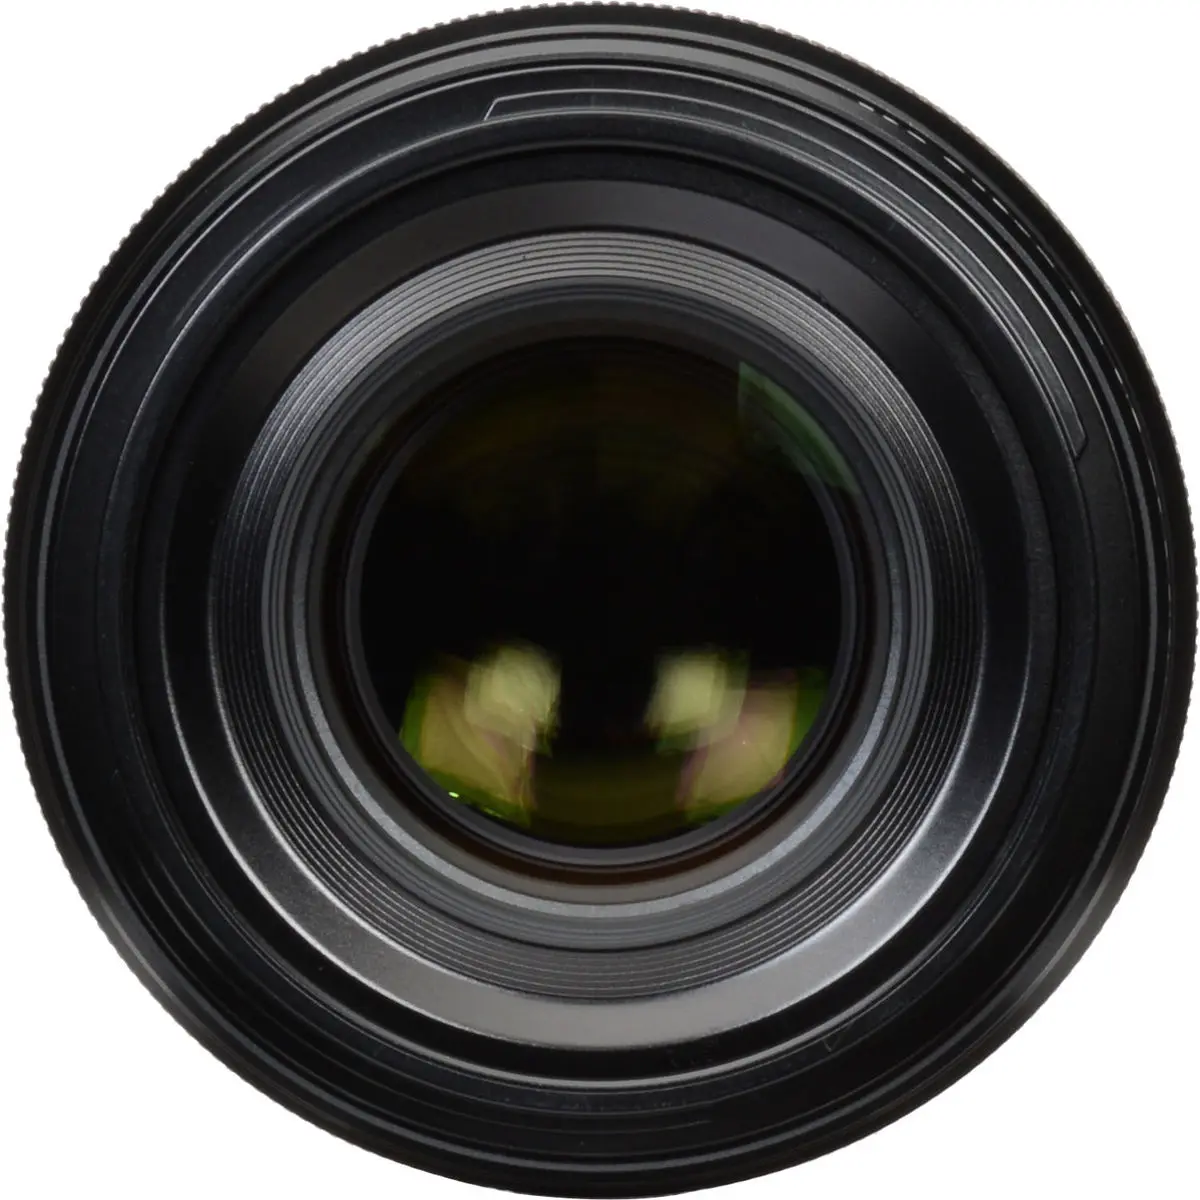 3. Fujifilm Fujinon XF 80mm F2.8 R LM OIS WR Macro Lens